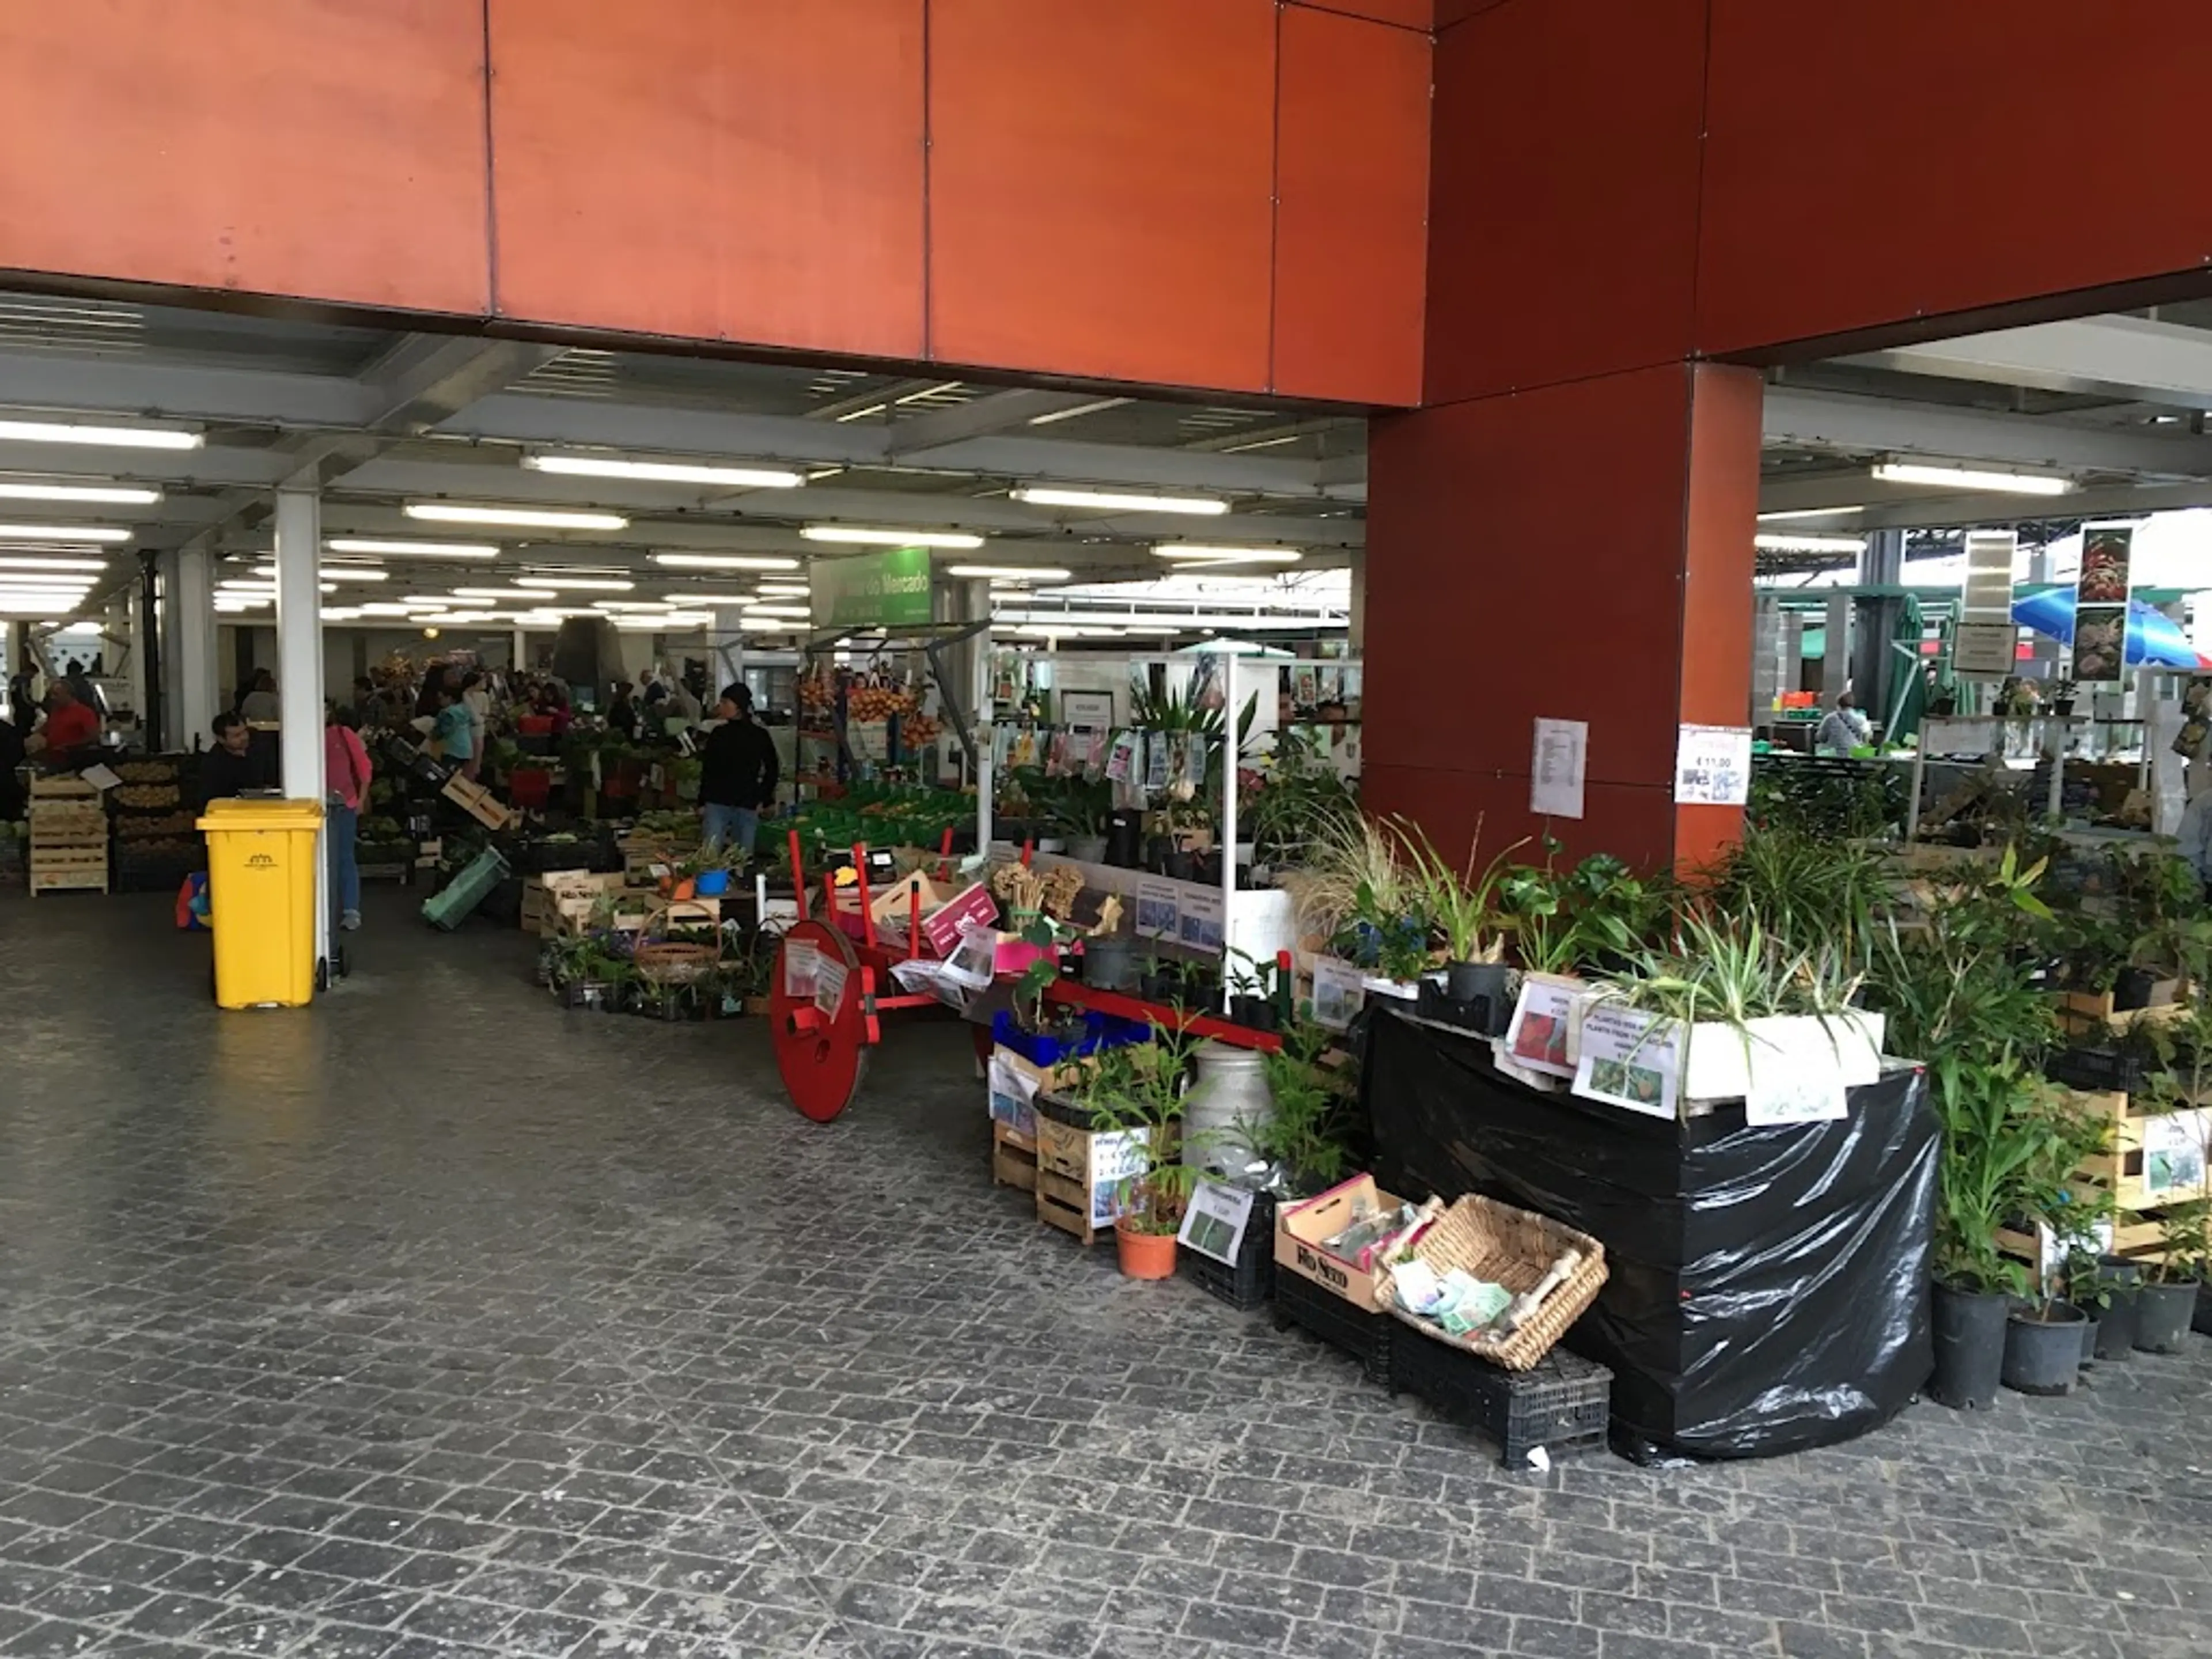 Local market in Ponta Delgada